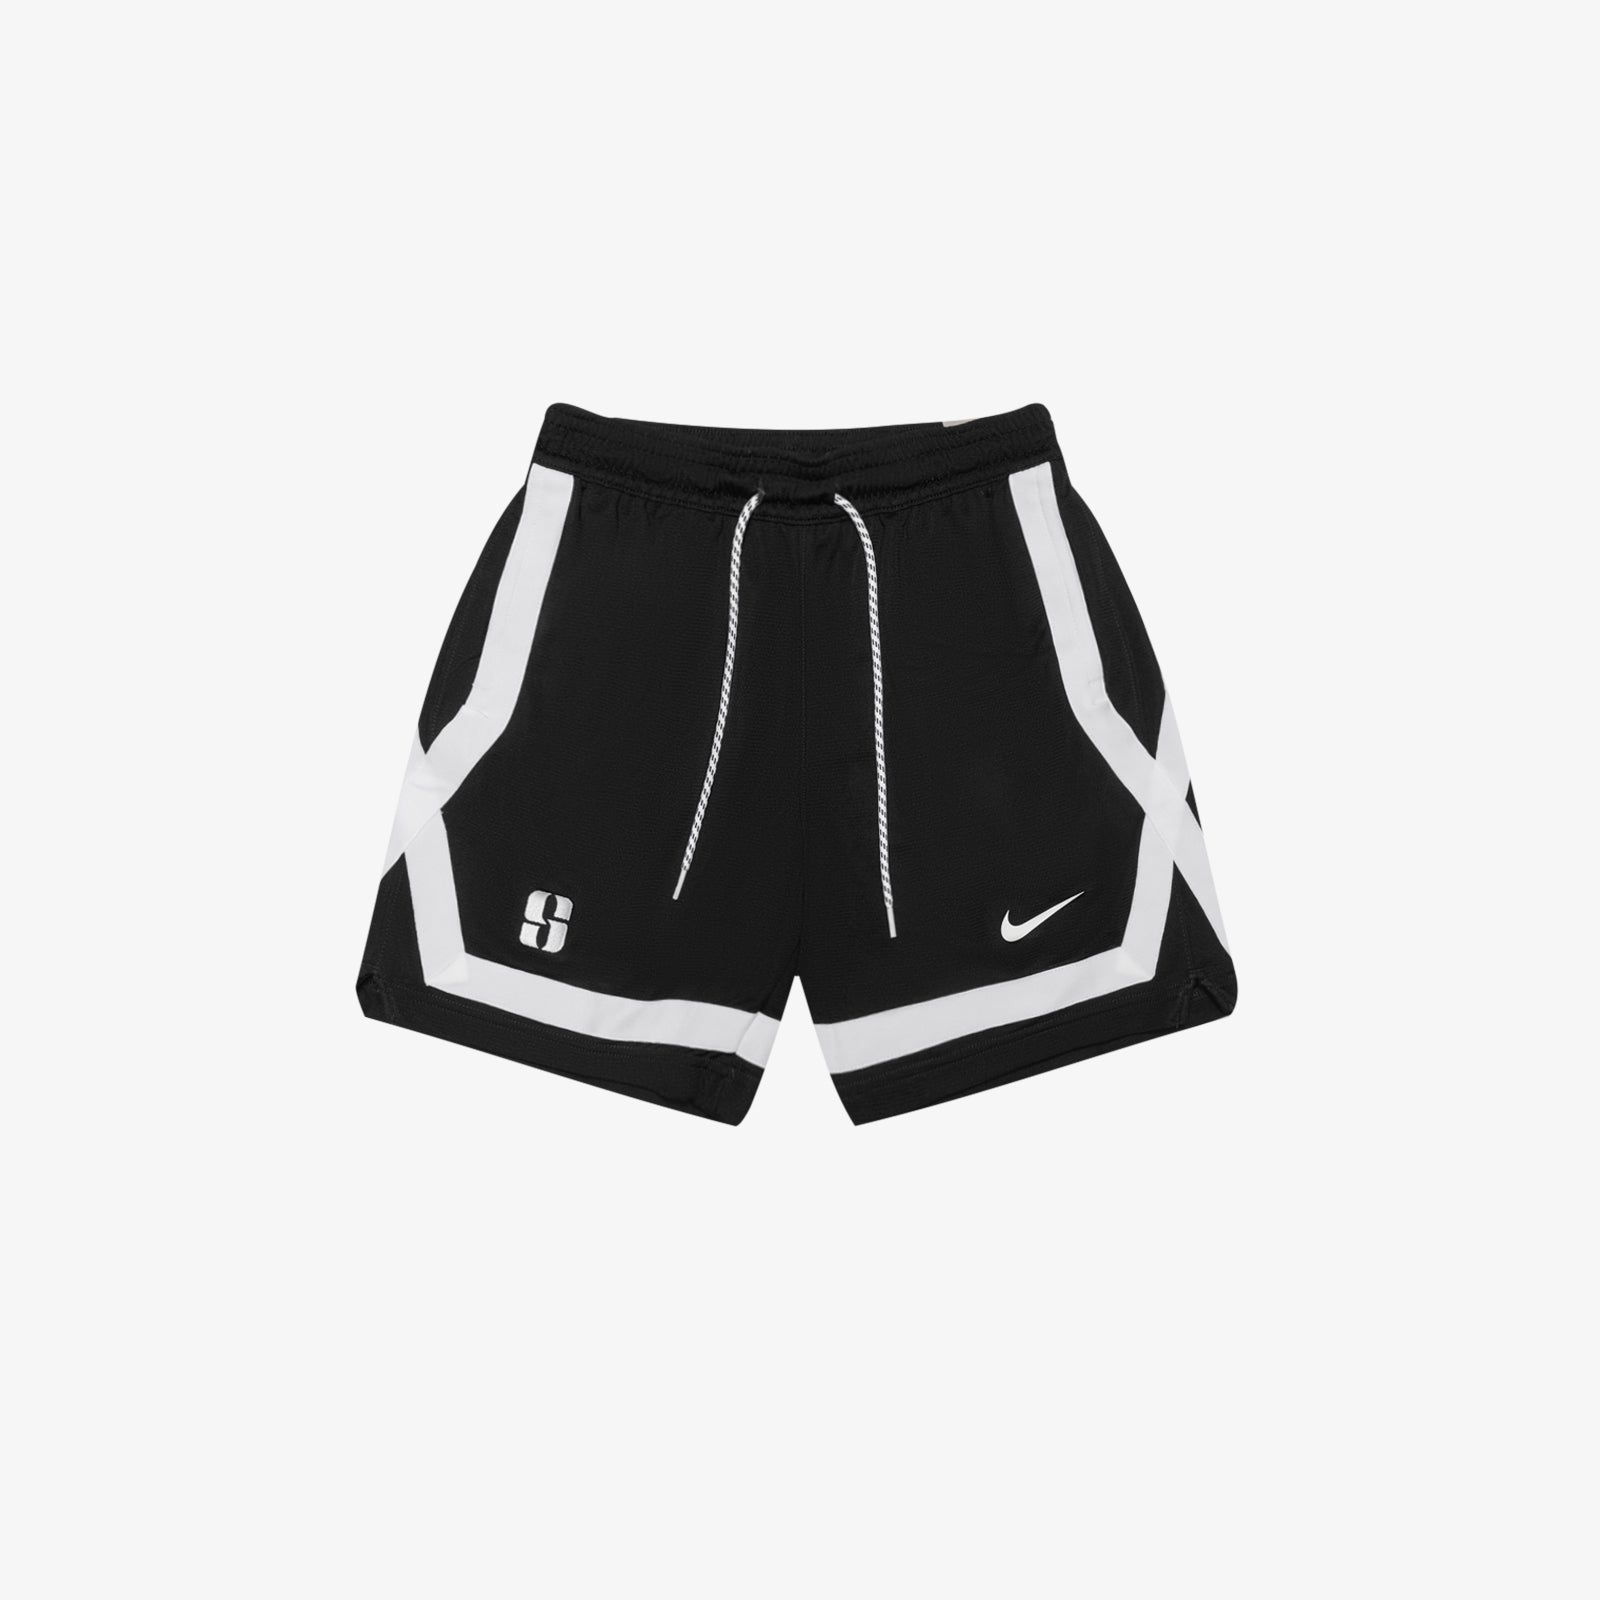 Official NBA Ladies Shorts, NBA Basketball Shorts, Gym Shorts, Compression  Shorts